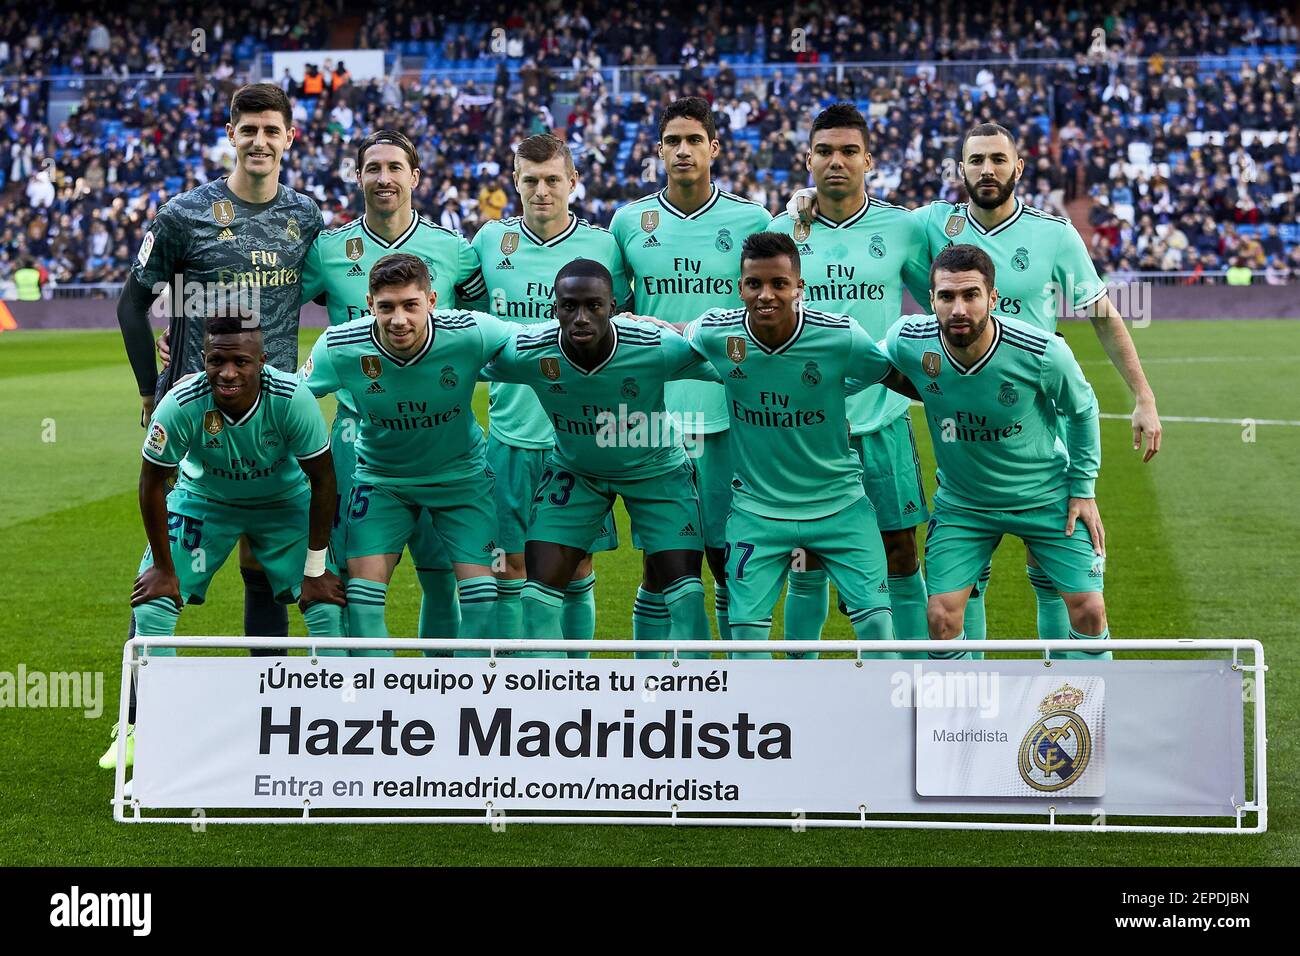 Foto del equipo del Real Madrid durante el partido de fútbol de la Liga entre el Real Madrid y el RCD Espanyol en el estadio Santiago Bernabeu de Madrid. final; Real